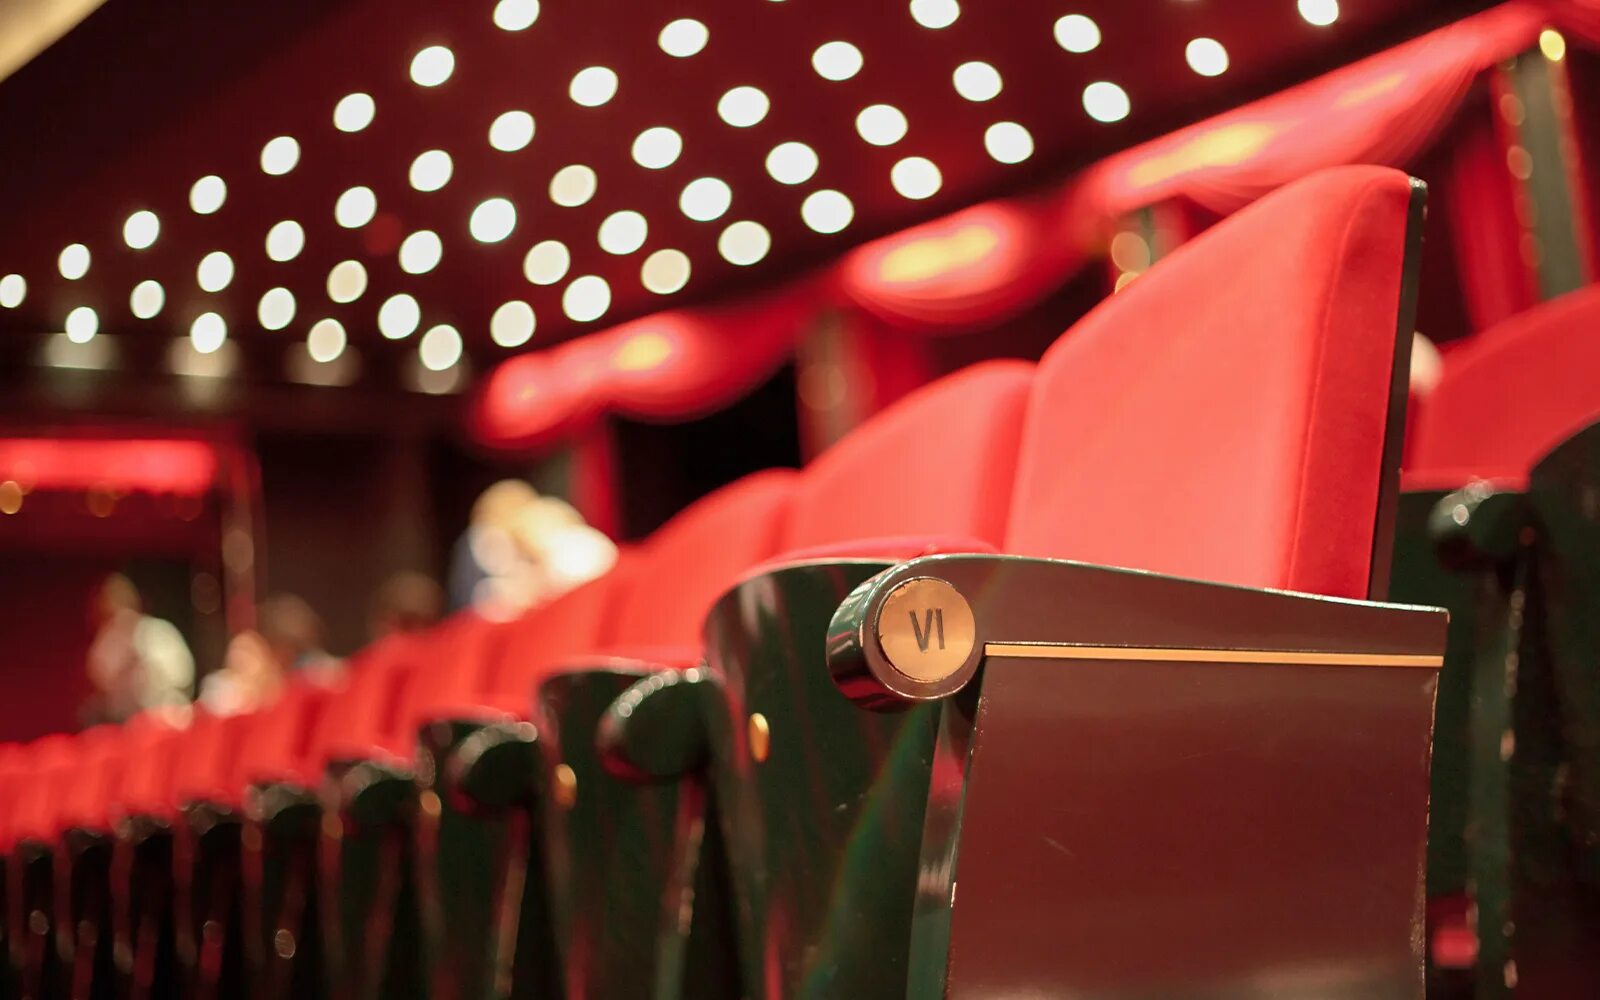 Theater seating. Сиденья в театре. Кресло в кинотеатре сверху. Ряды сидений в театре.